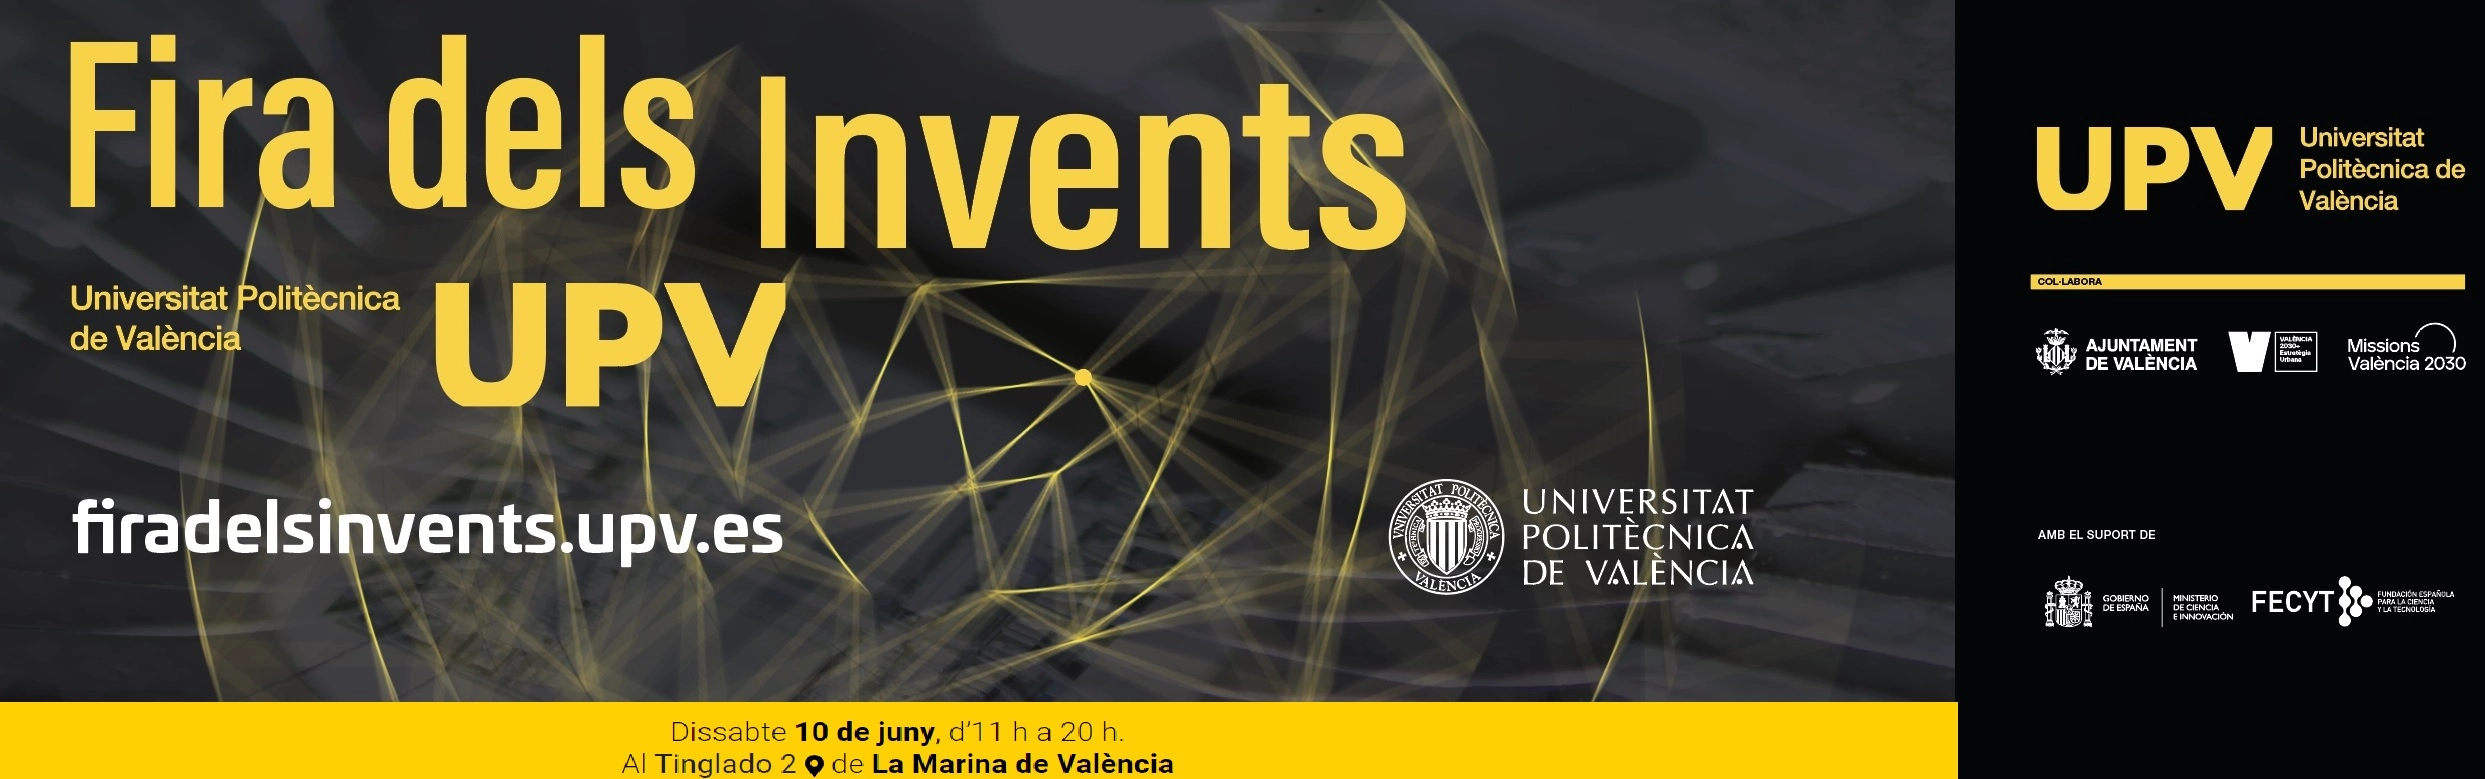 Cartell de la Fira dels Invents de la Universitat Politècnica de València